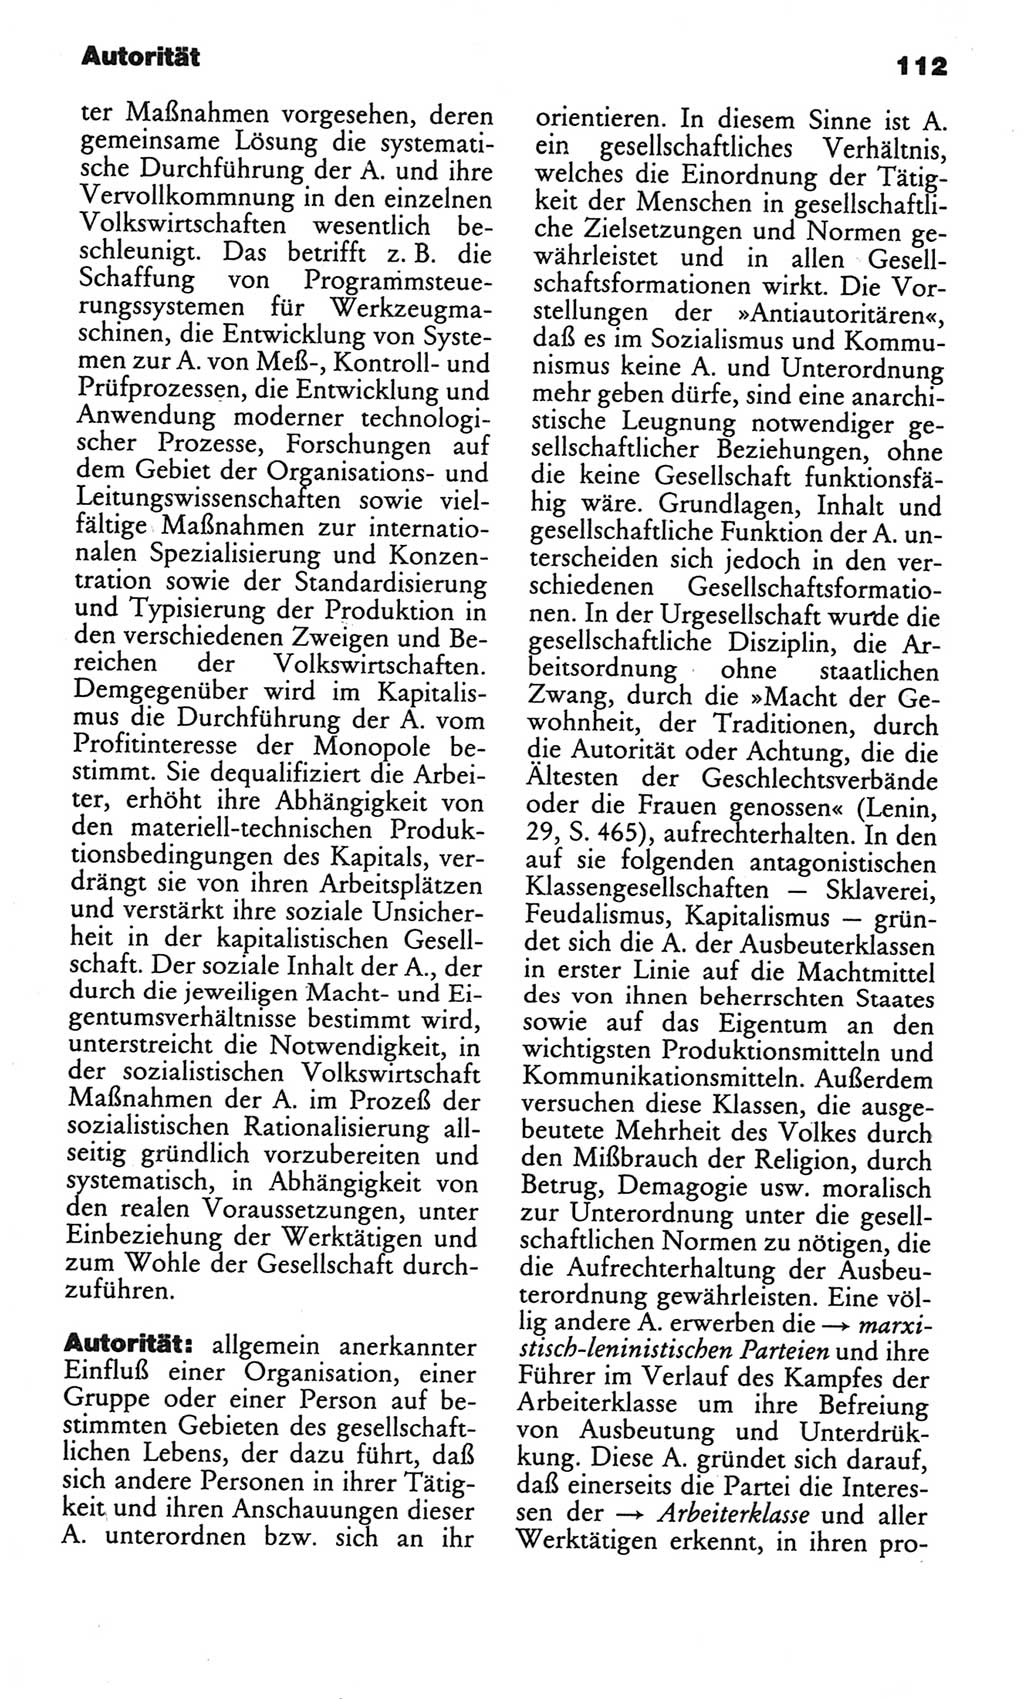 Kleines politisches Wörterbuch [Deutsche Demokratische Republik (DDR)] 1986, Seite 112 (Kl. pol. Wb. DDR 1986, S. 112)